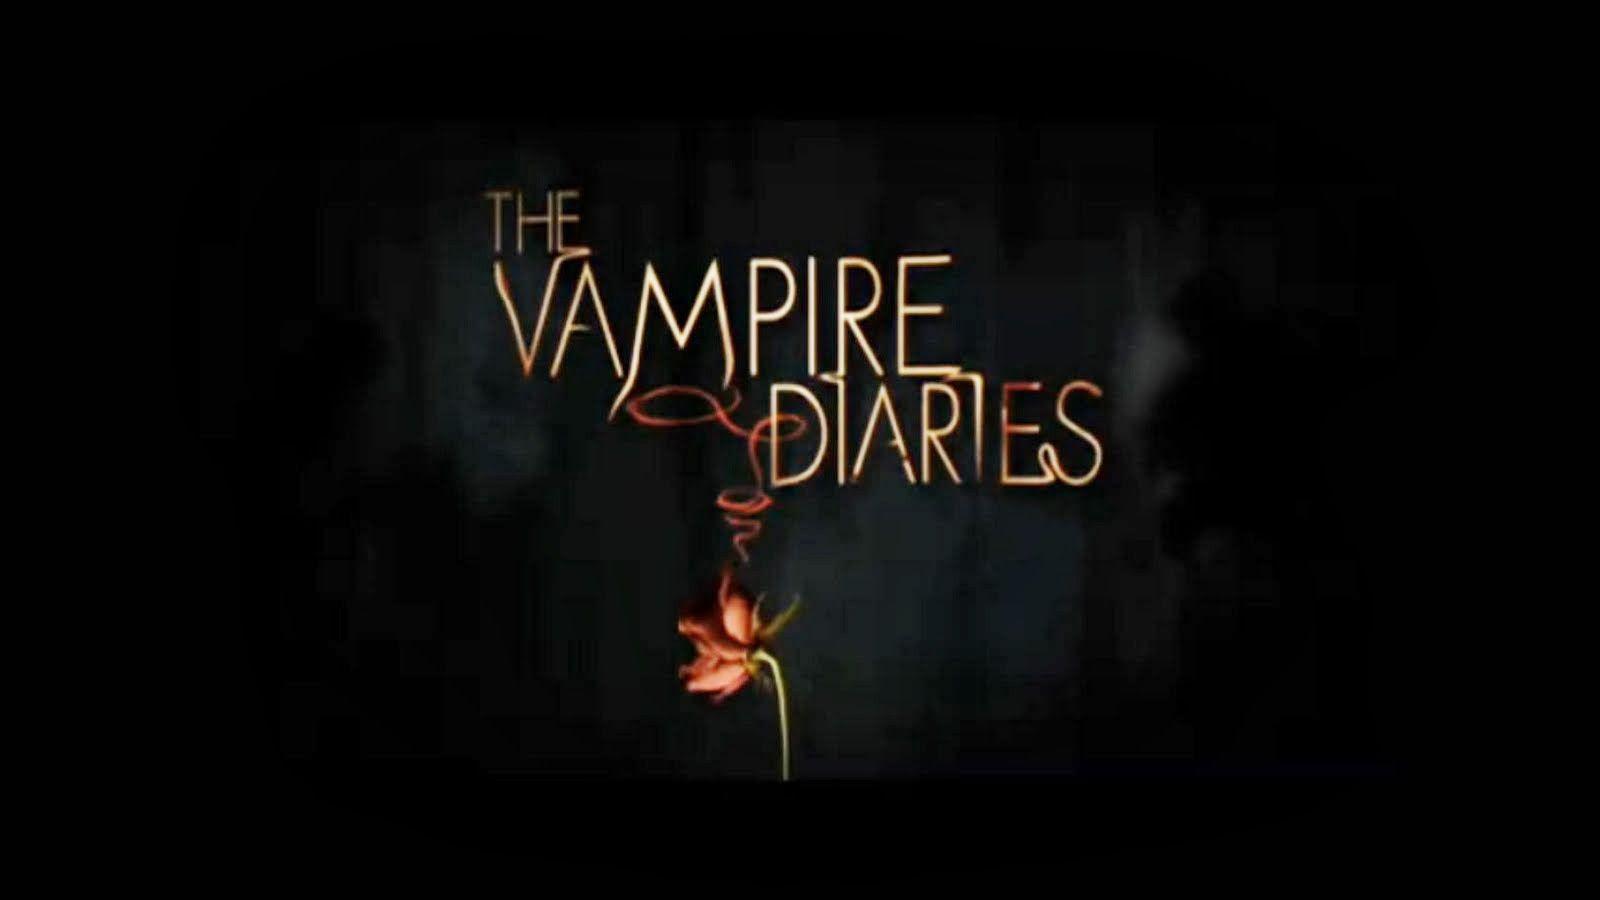 Vampire Original Logo - My thought on VAMPIRE DIARIES S05 AND THE ORIGINAL | Fretty Anggeni